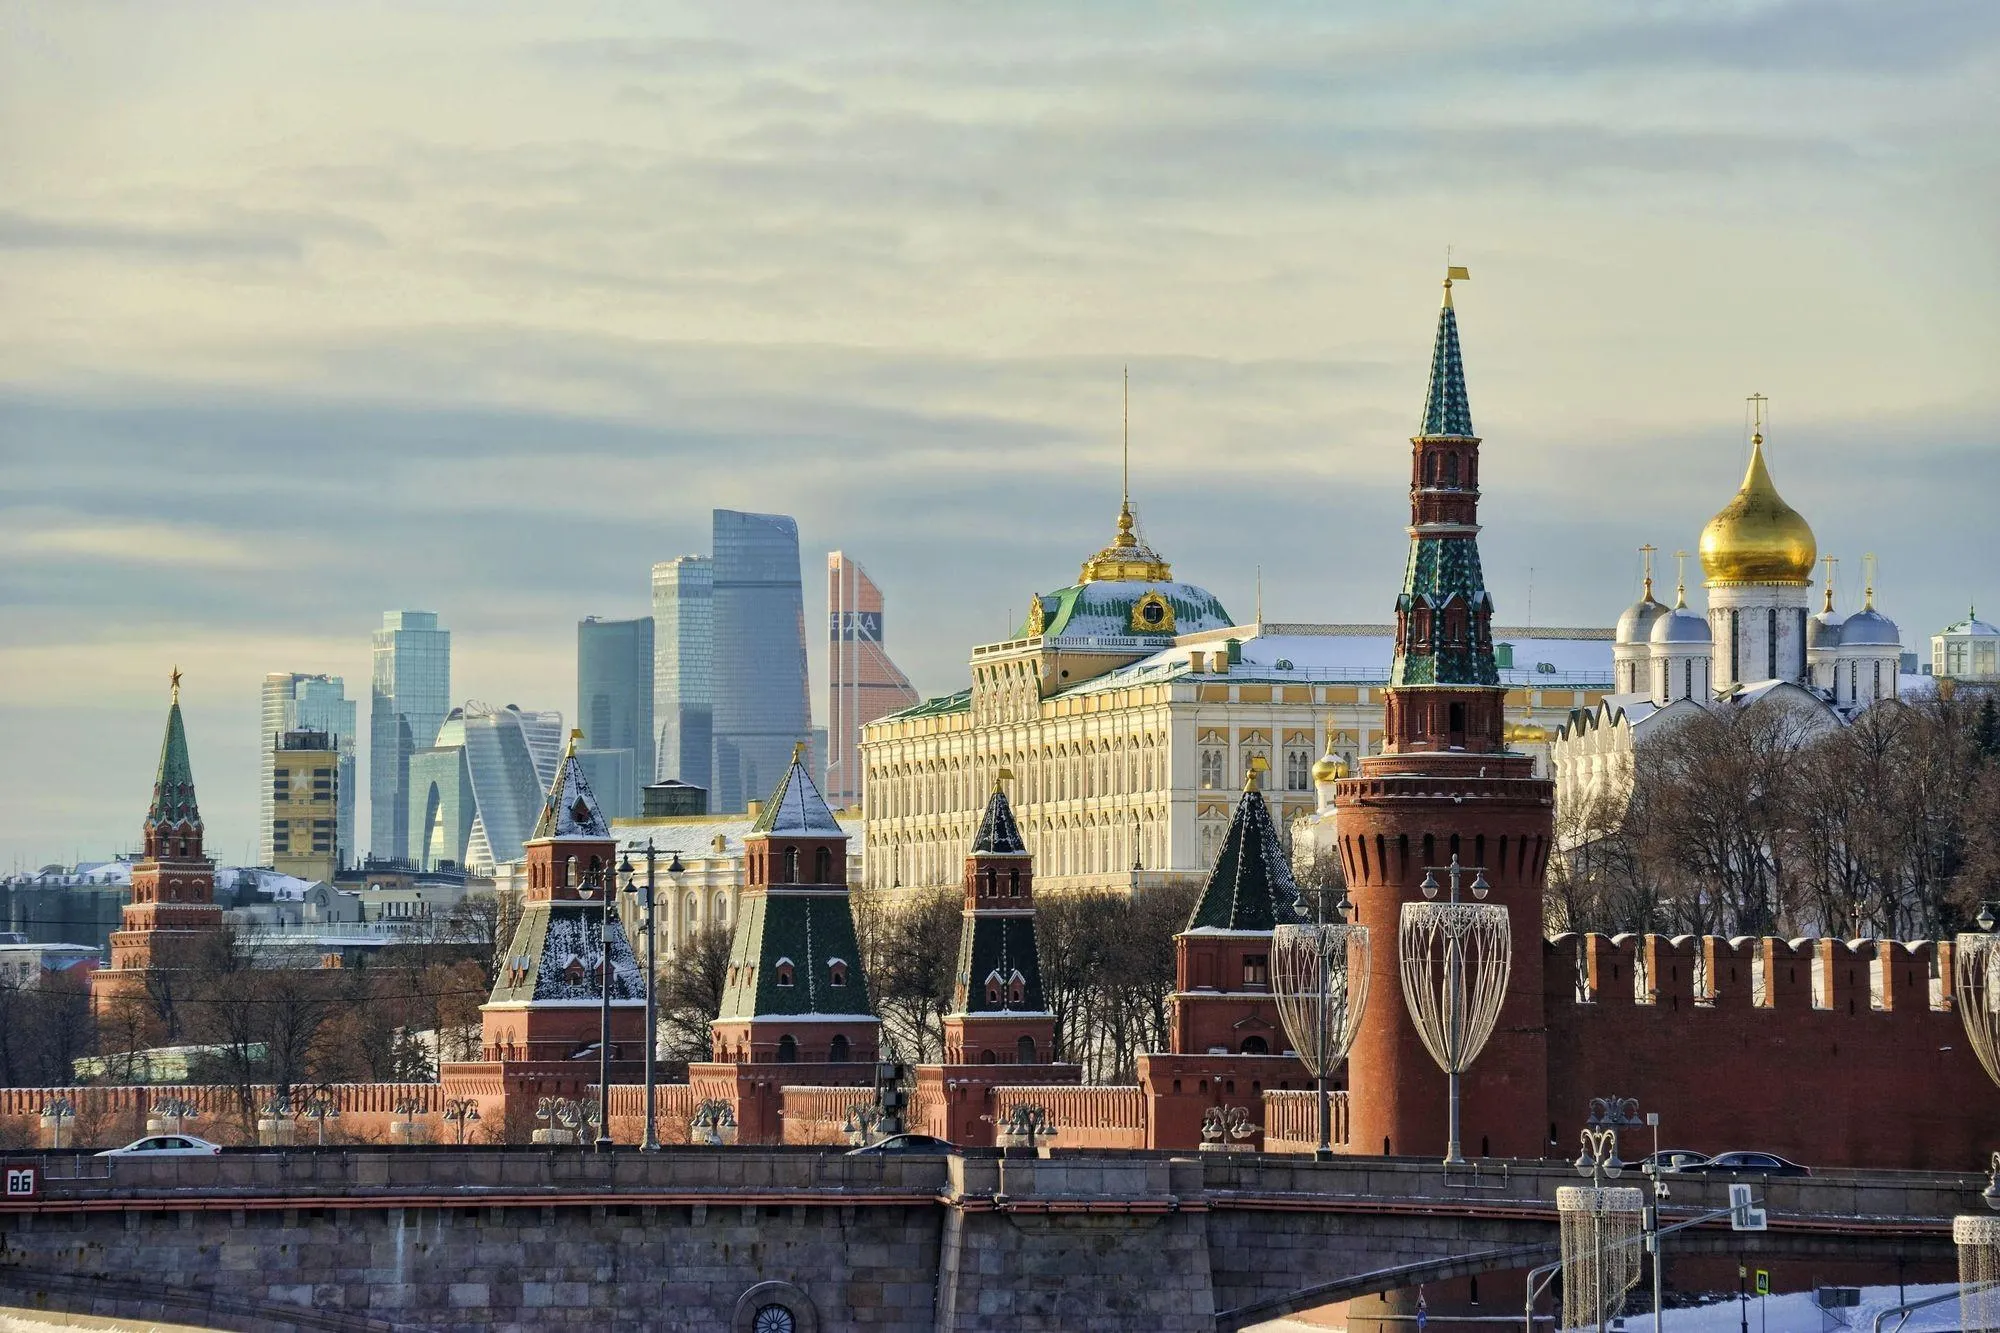 Vue du Kremlin (premier plan) et du quartier d'affaires de Moskva-City